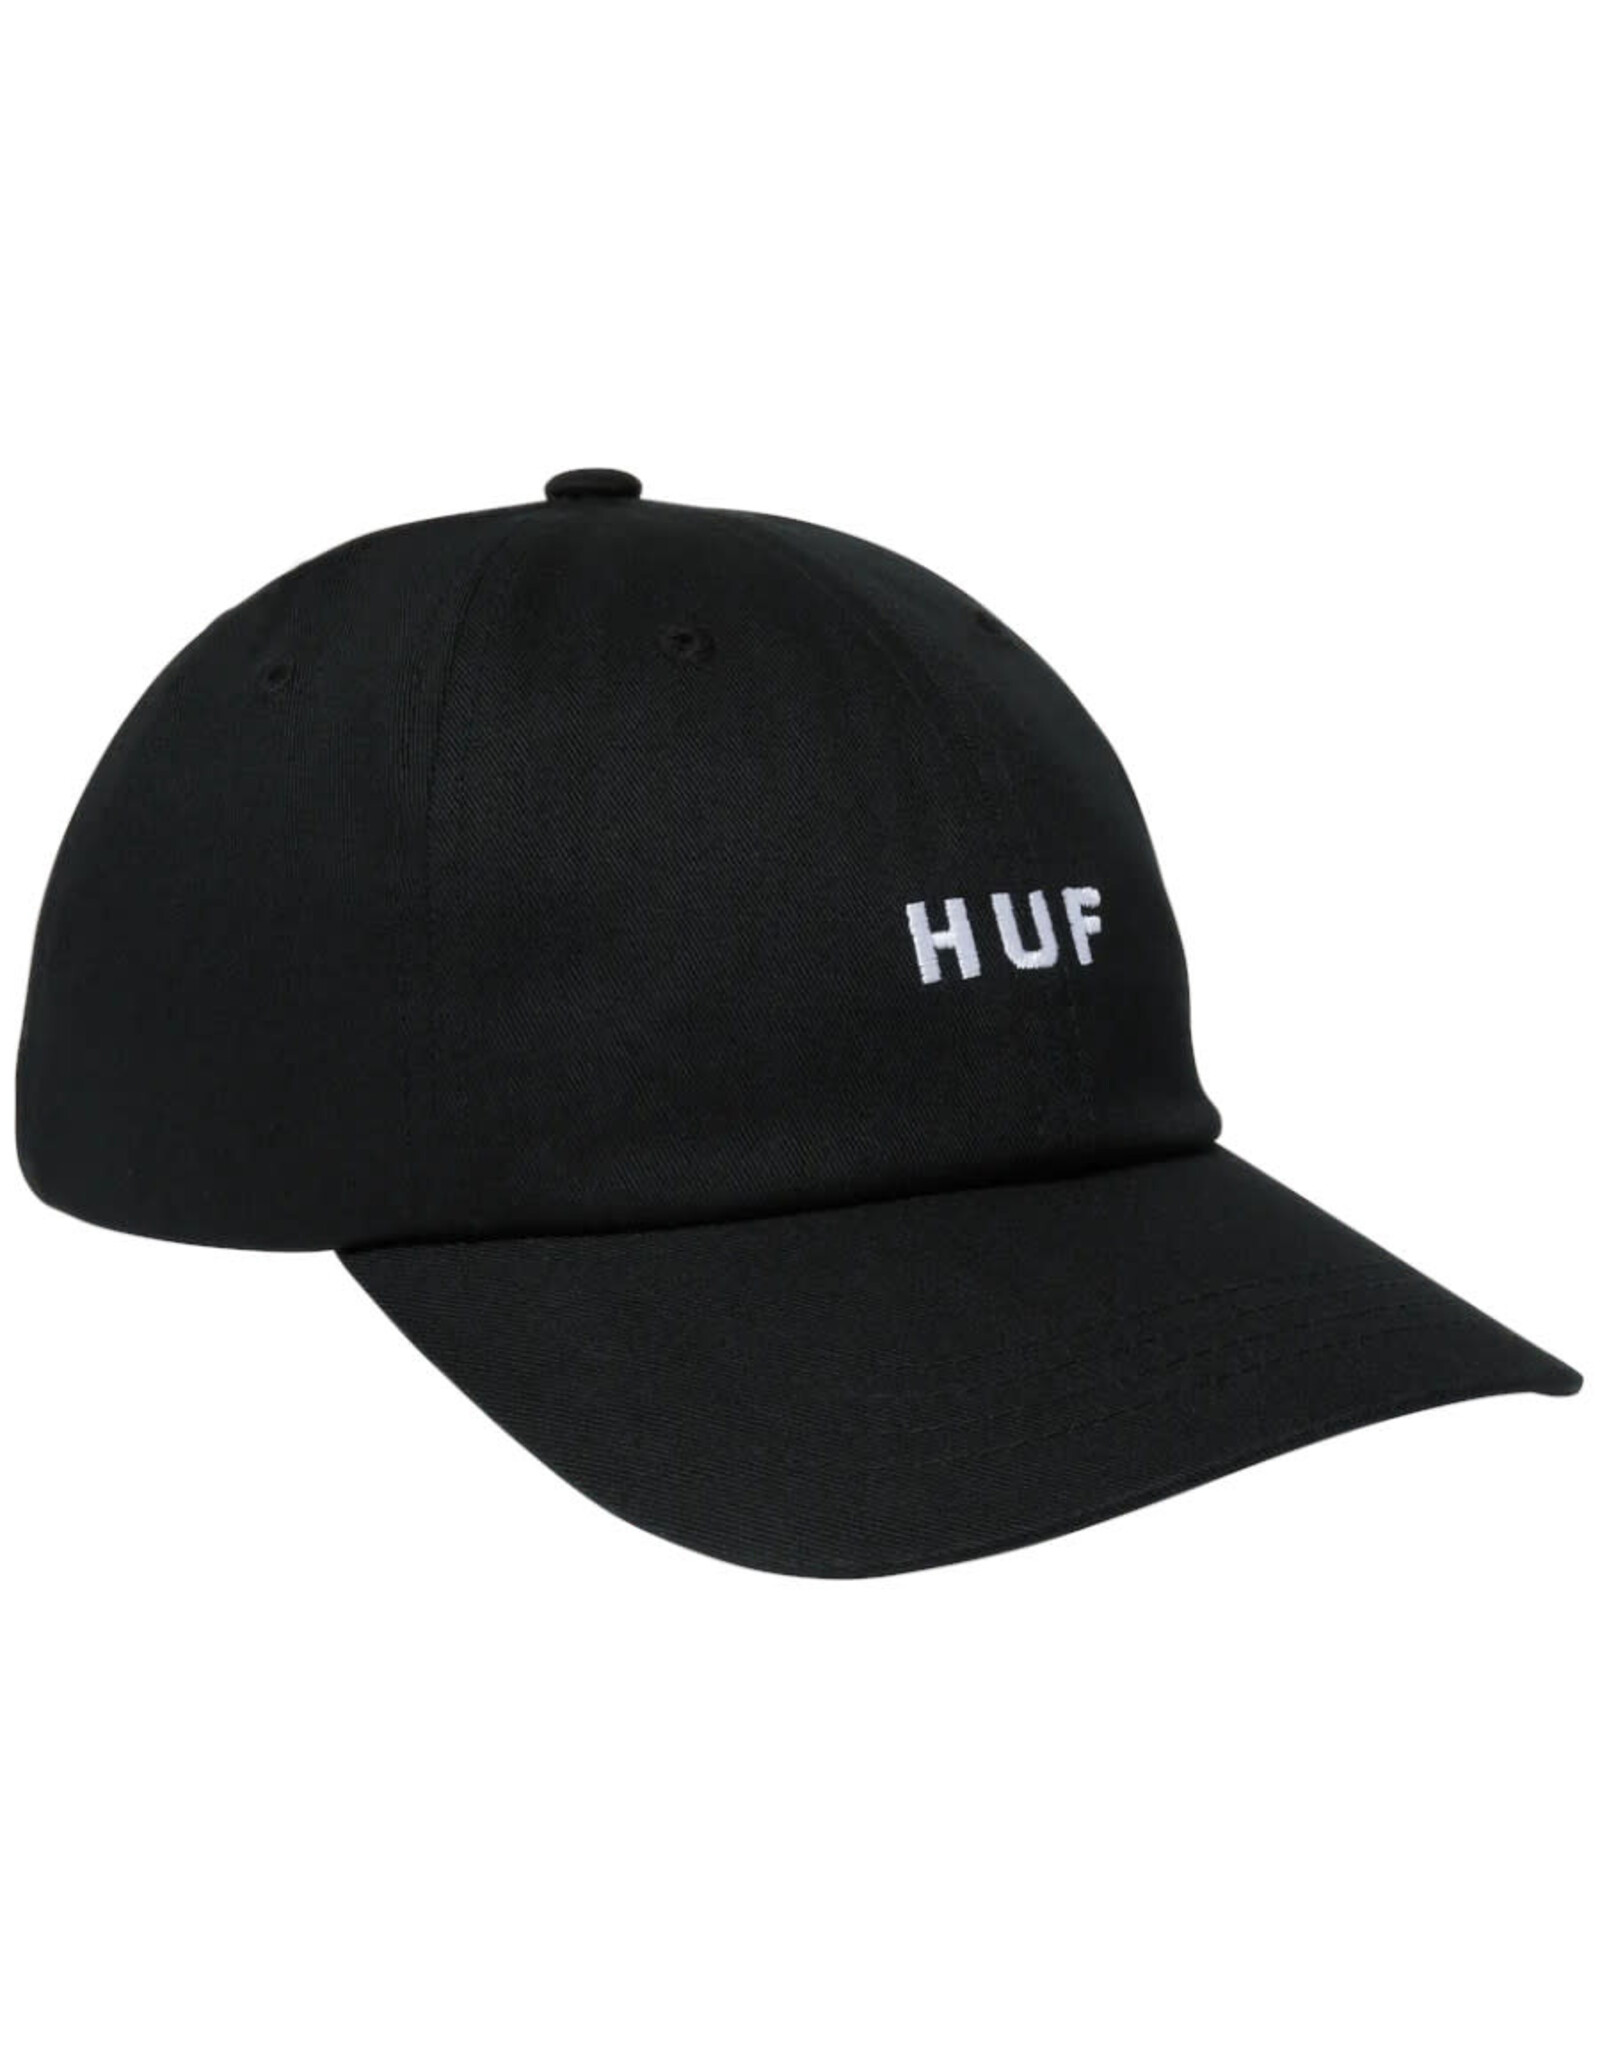 Huf Huf Hat Set OG Curved Bill Strapback (Black)